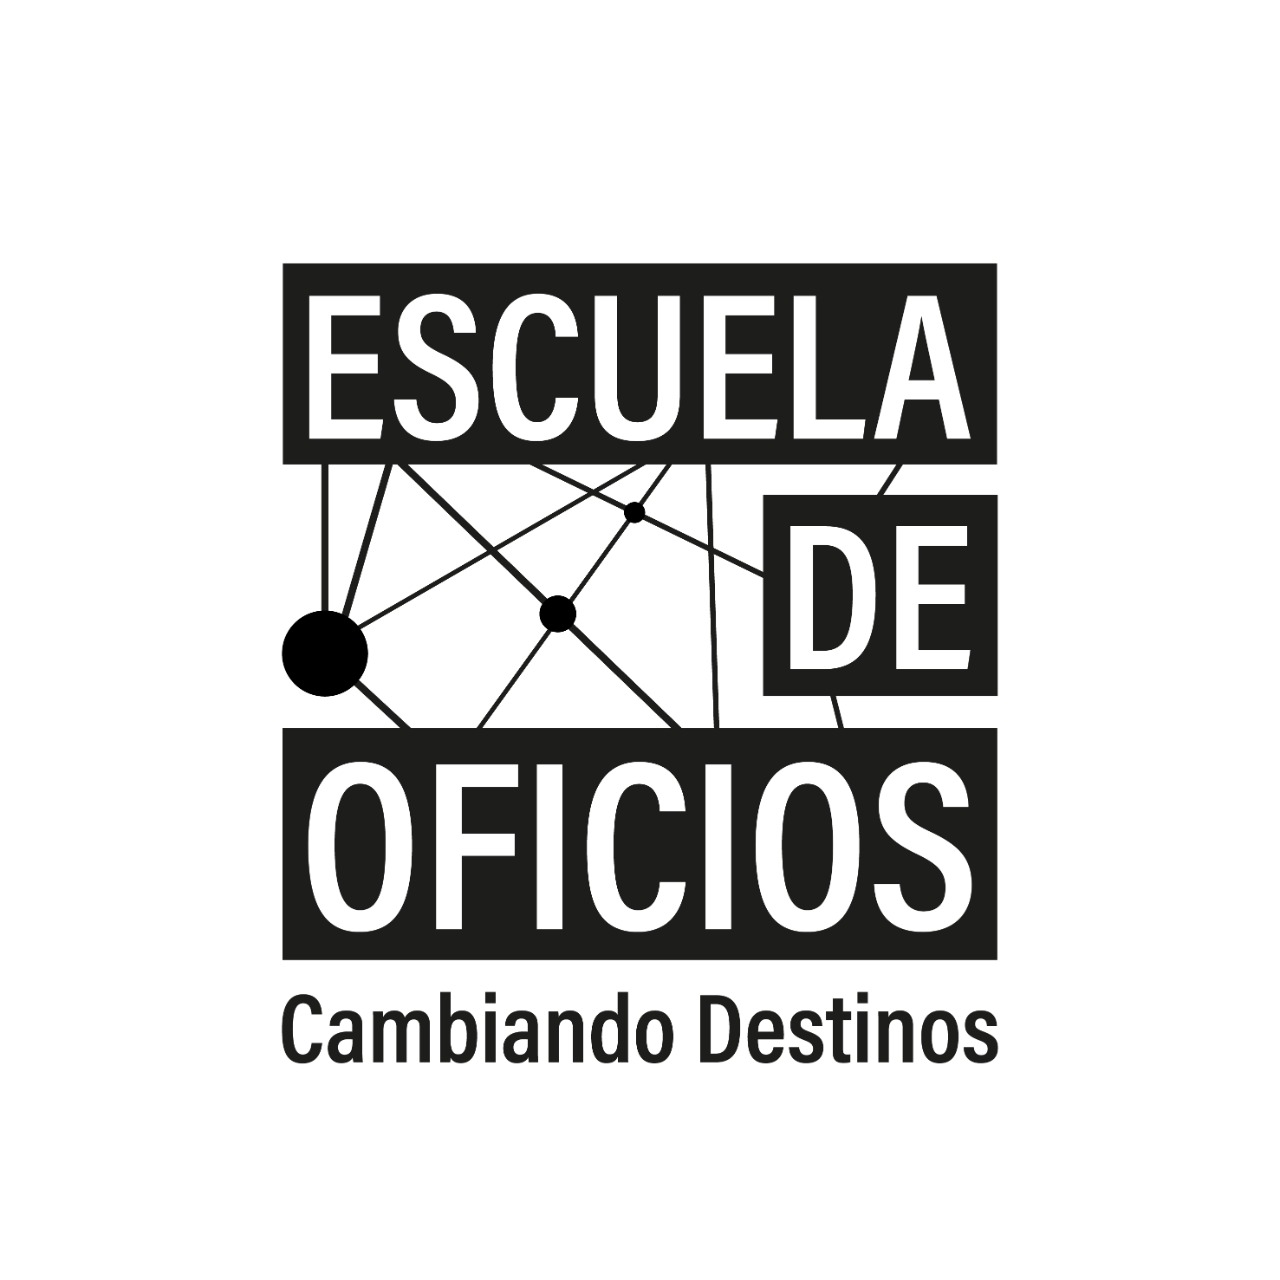 Escuela de Oficios para jóvenes se inaugurará a finales de febrero en Valdivia